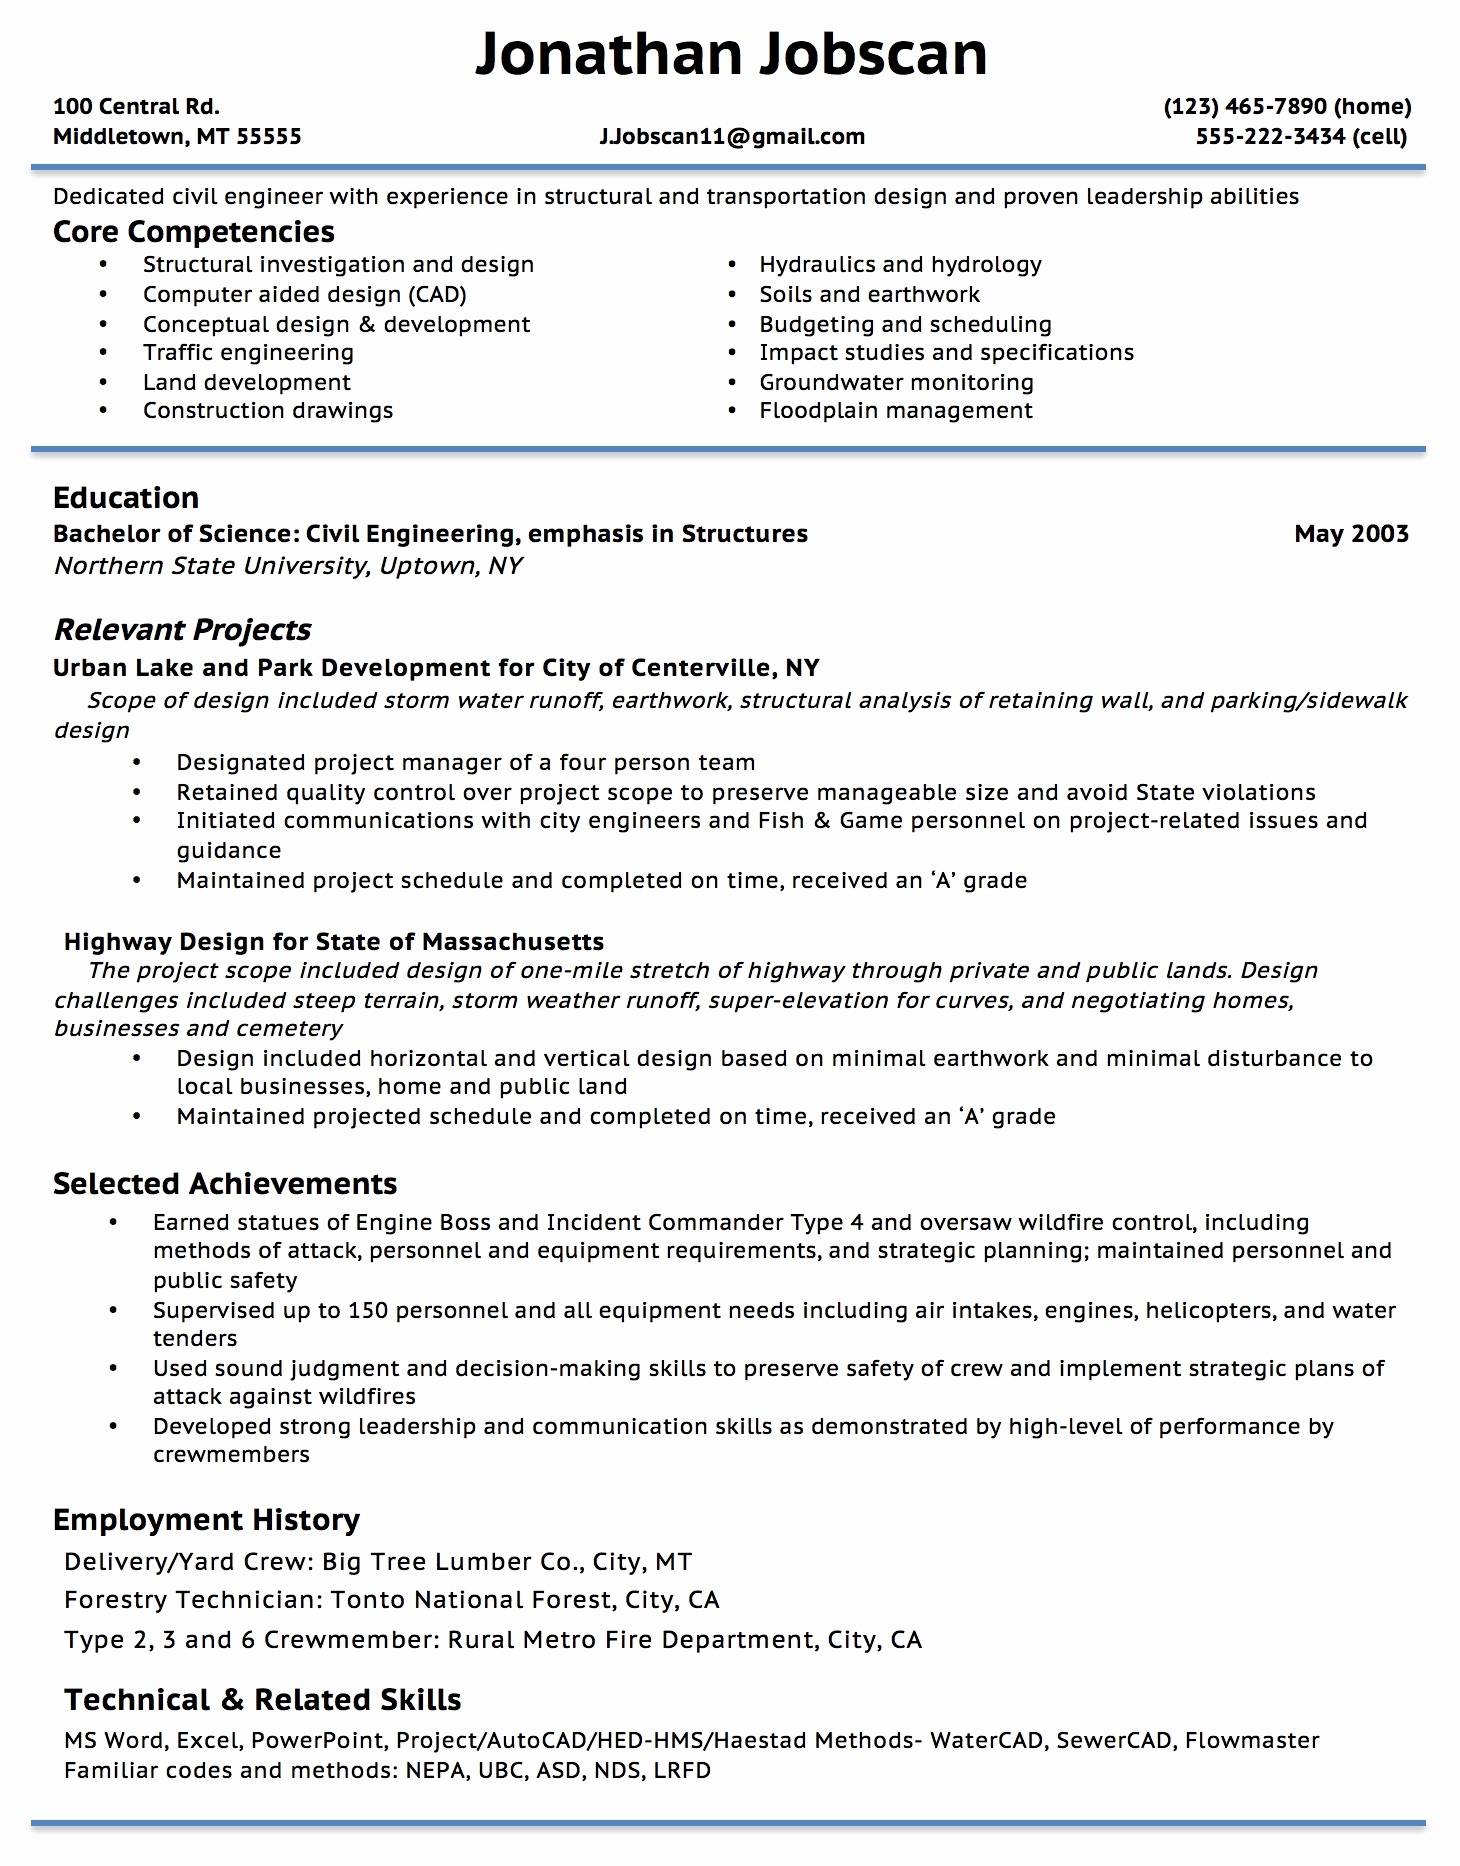 resume format overleaf